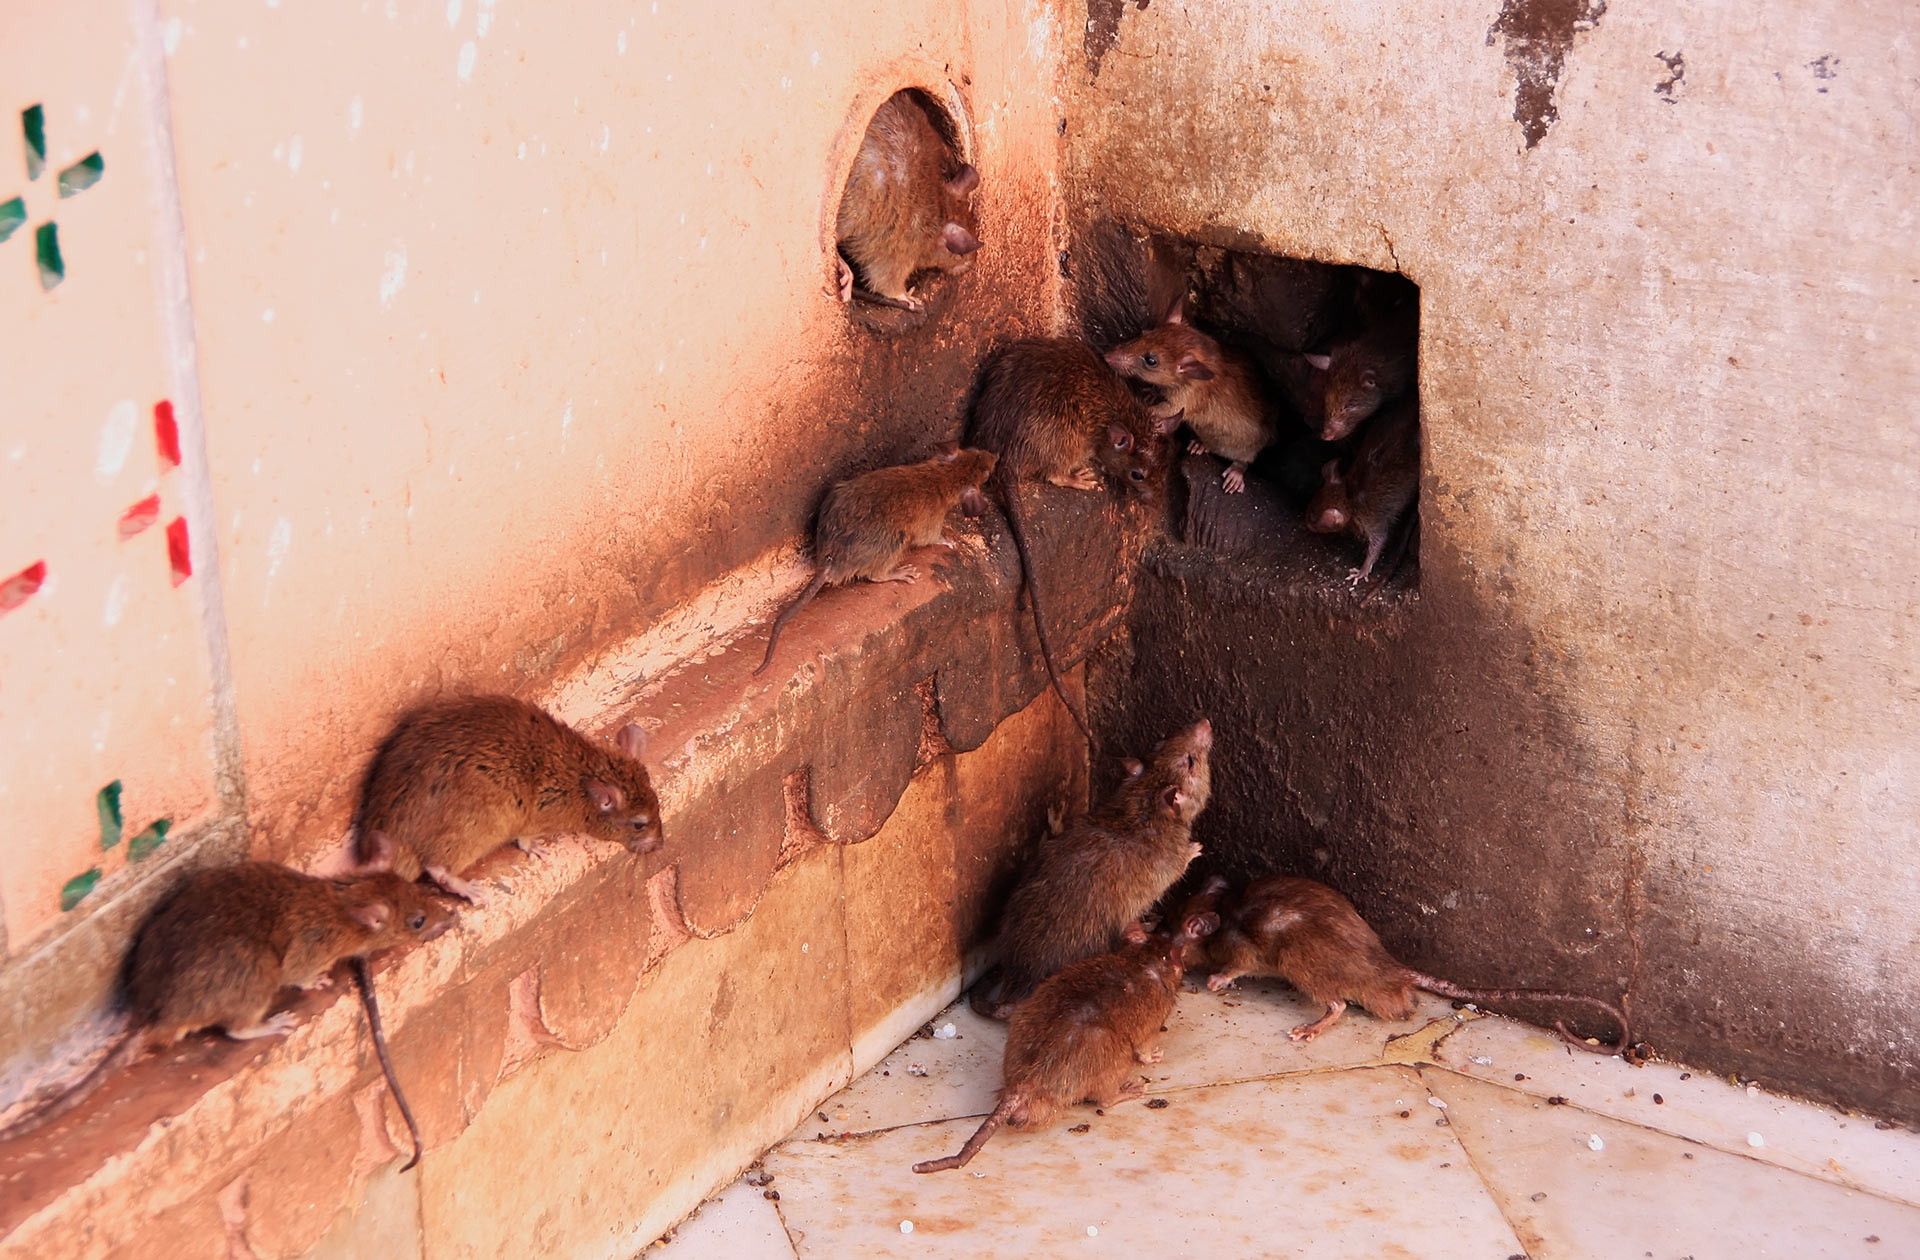 Крысы в унитазе как бороться и что делать?